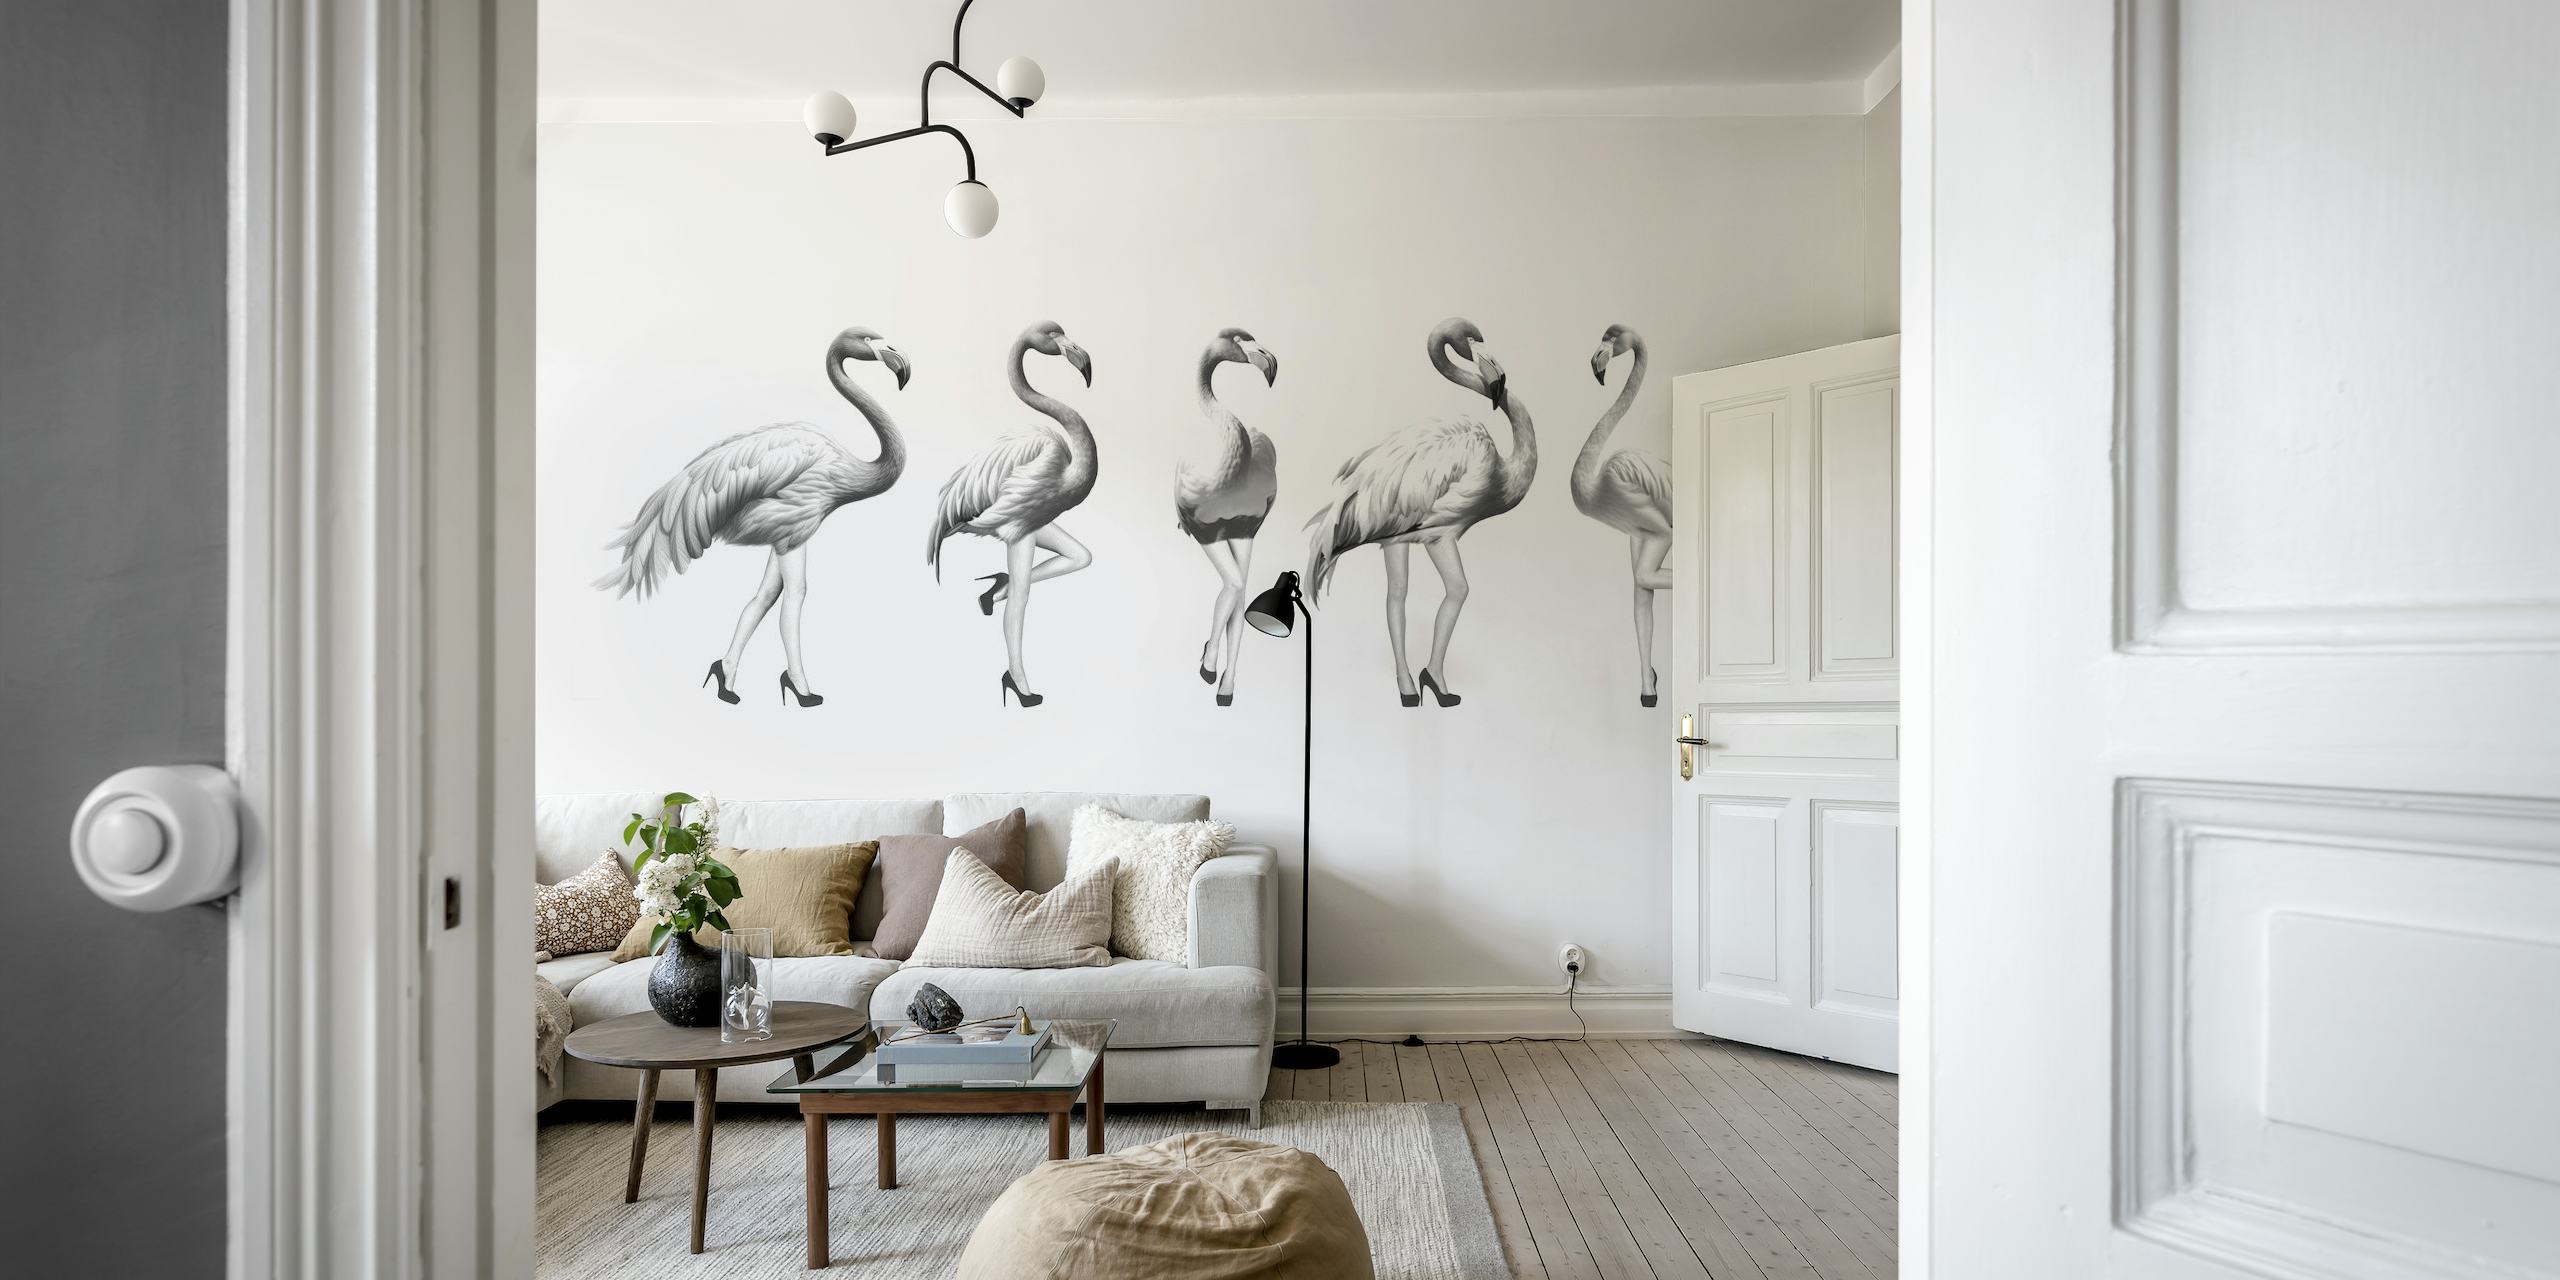 Mural de parede preto e branco de flamingos brincalhões em tons de cinza